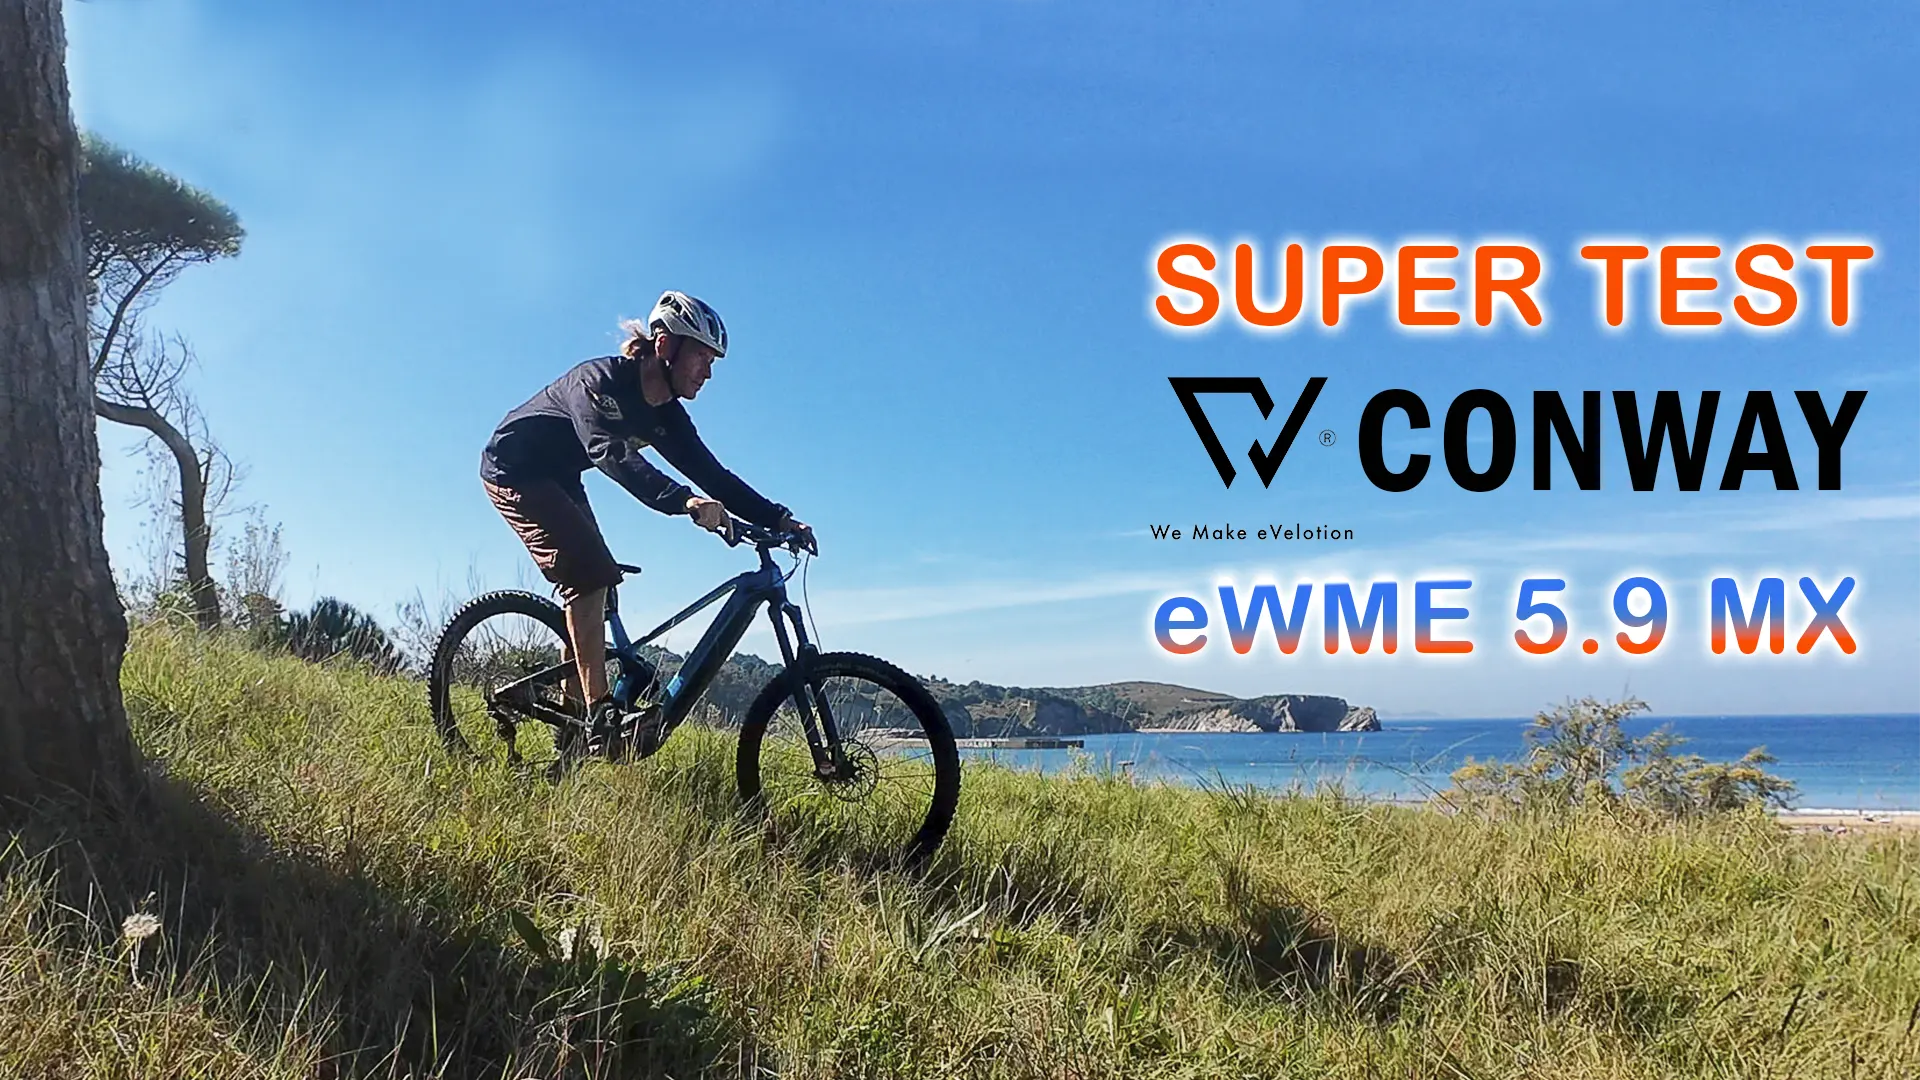 Conway eWME 5.9 MX a la altura de las más altas expectativas